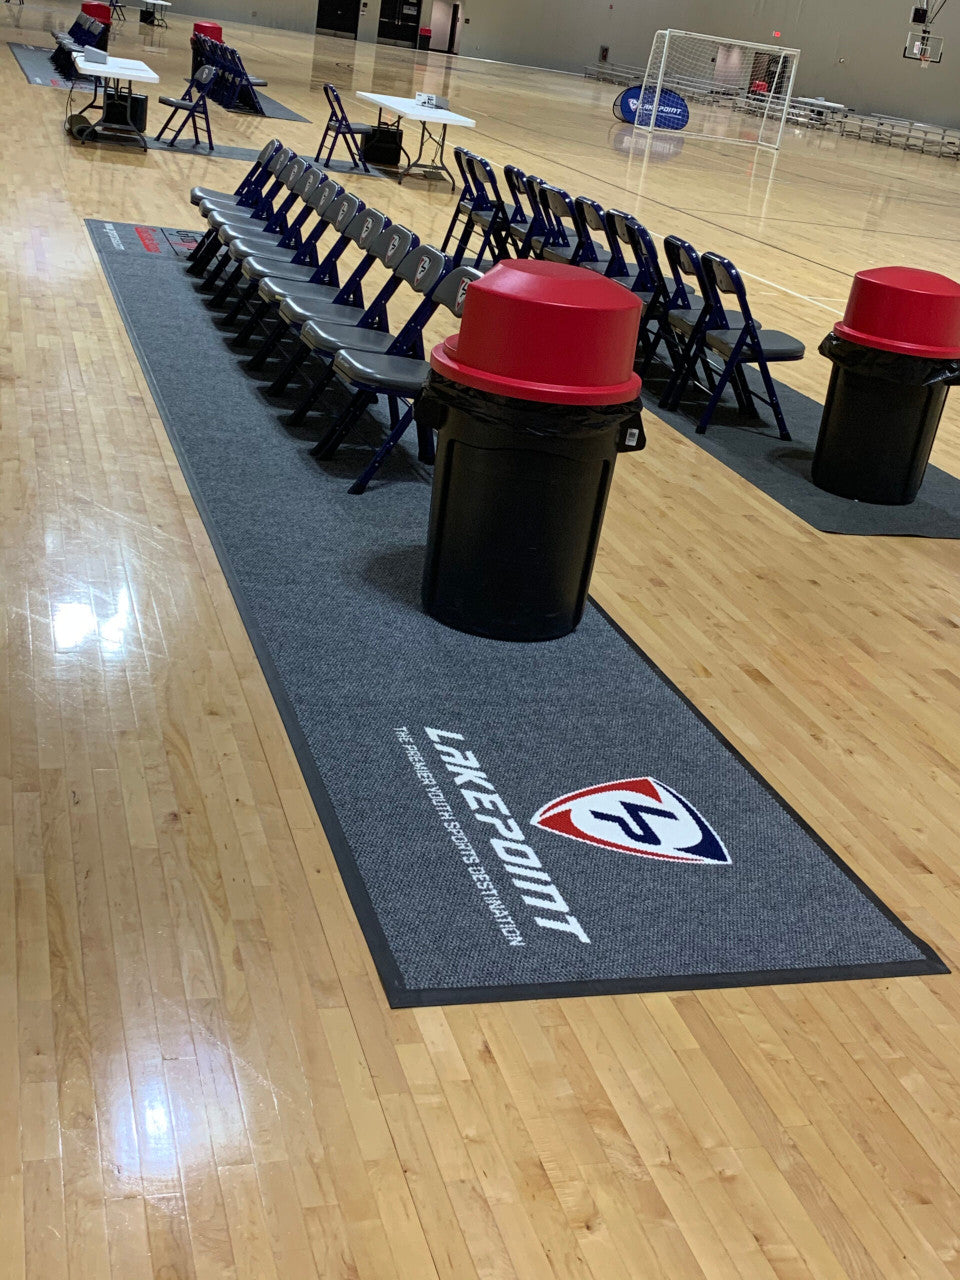 Design Online - Courtside Basketball Gym Floor Runner Rug – HoopsKing